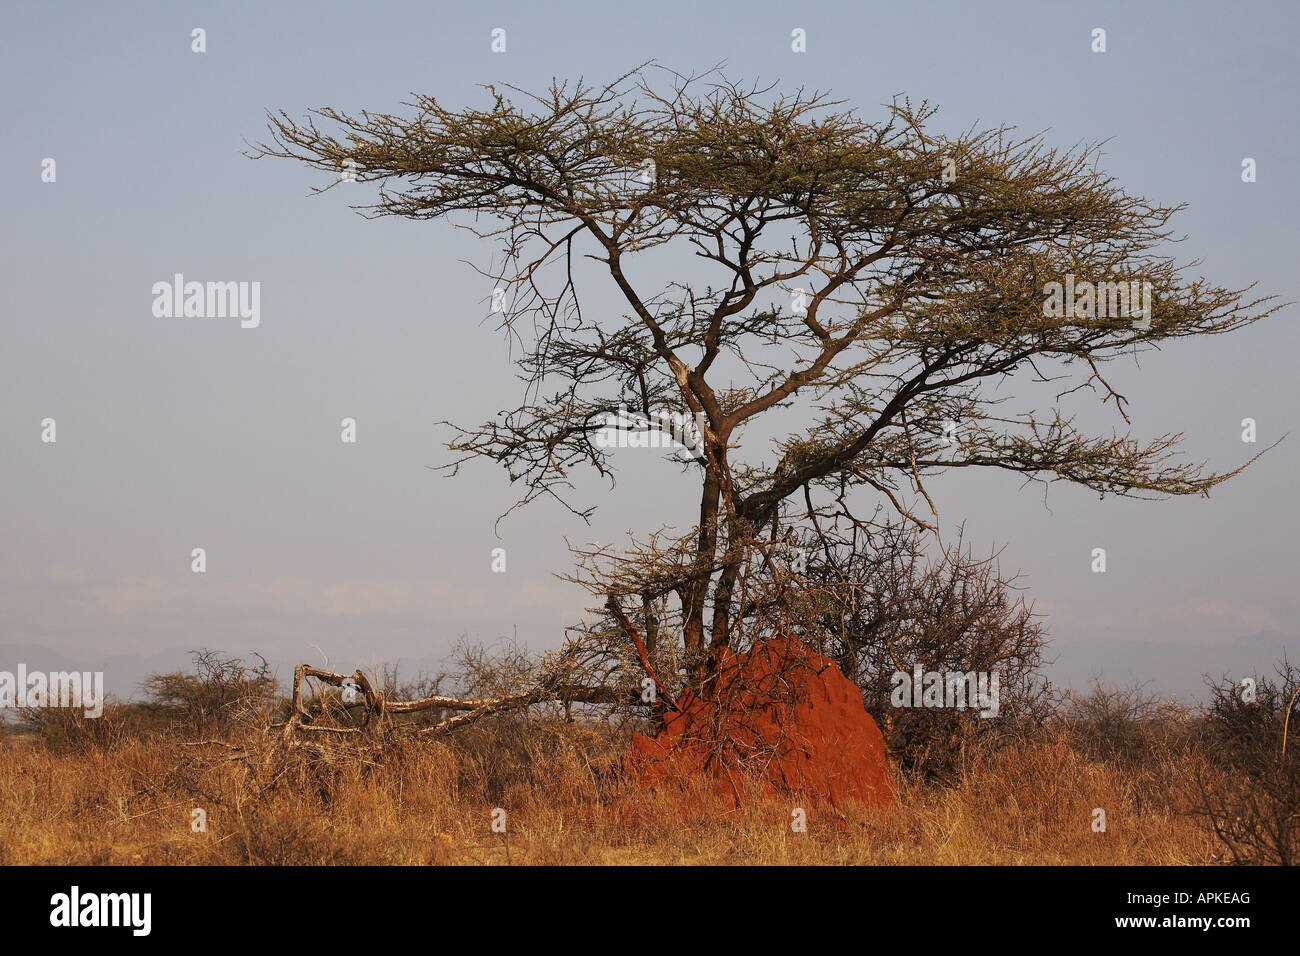 Umbrella Thorn Acacia, Umbrella Acacia (Acacia tortilis), tree, Kenya, Buffalo Springs National Reserve, Samburu, Isiolo Stock Photo